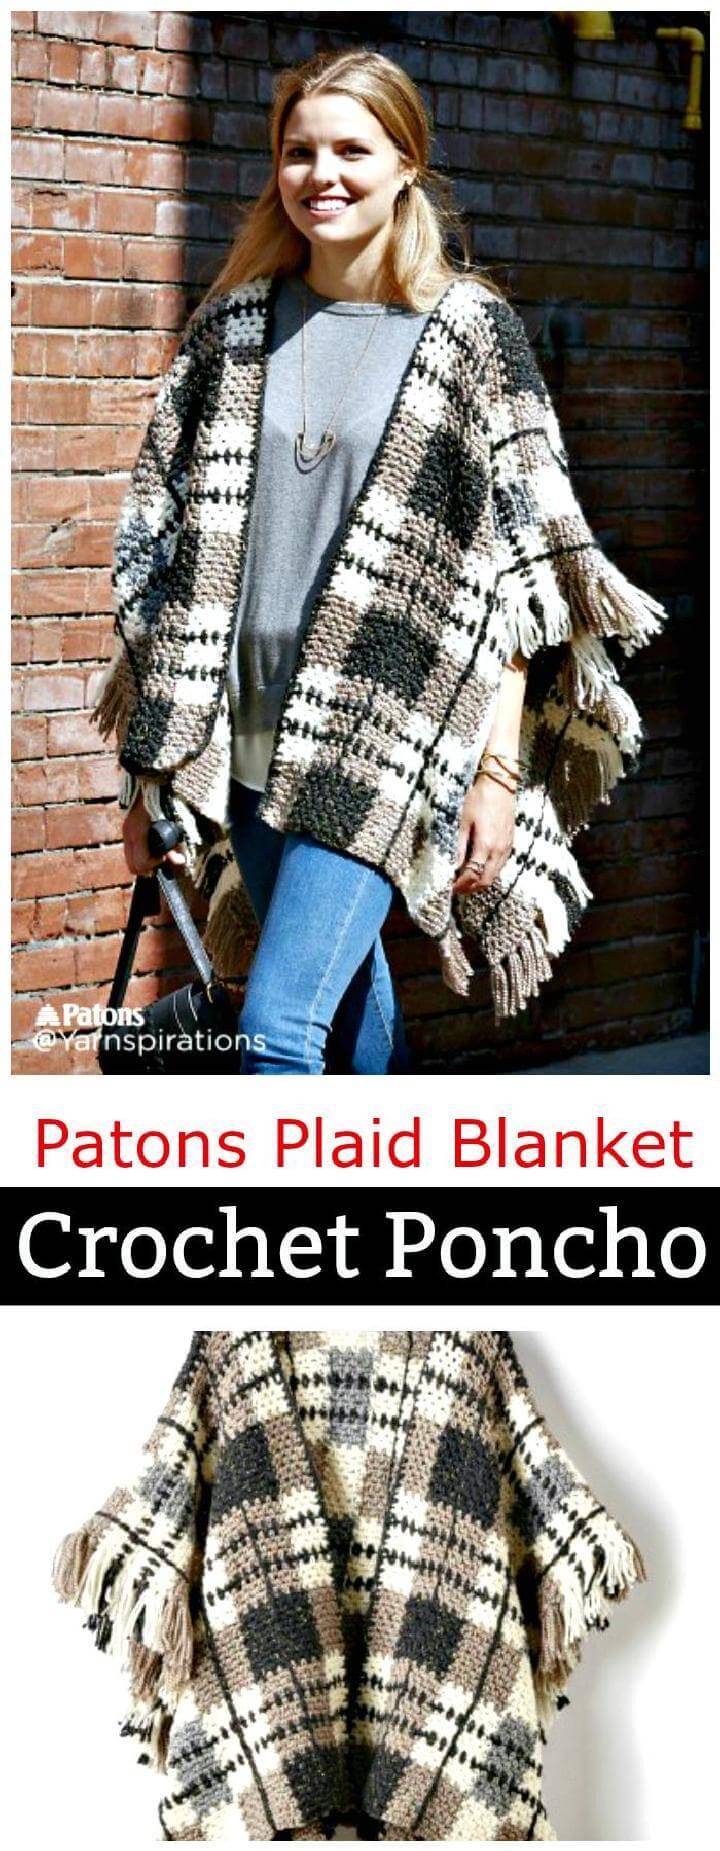 Patons Plaid Blanket Crochet Poncho